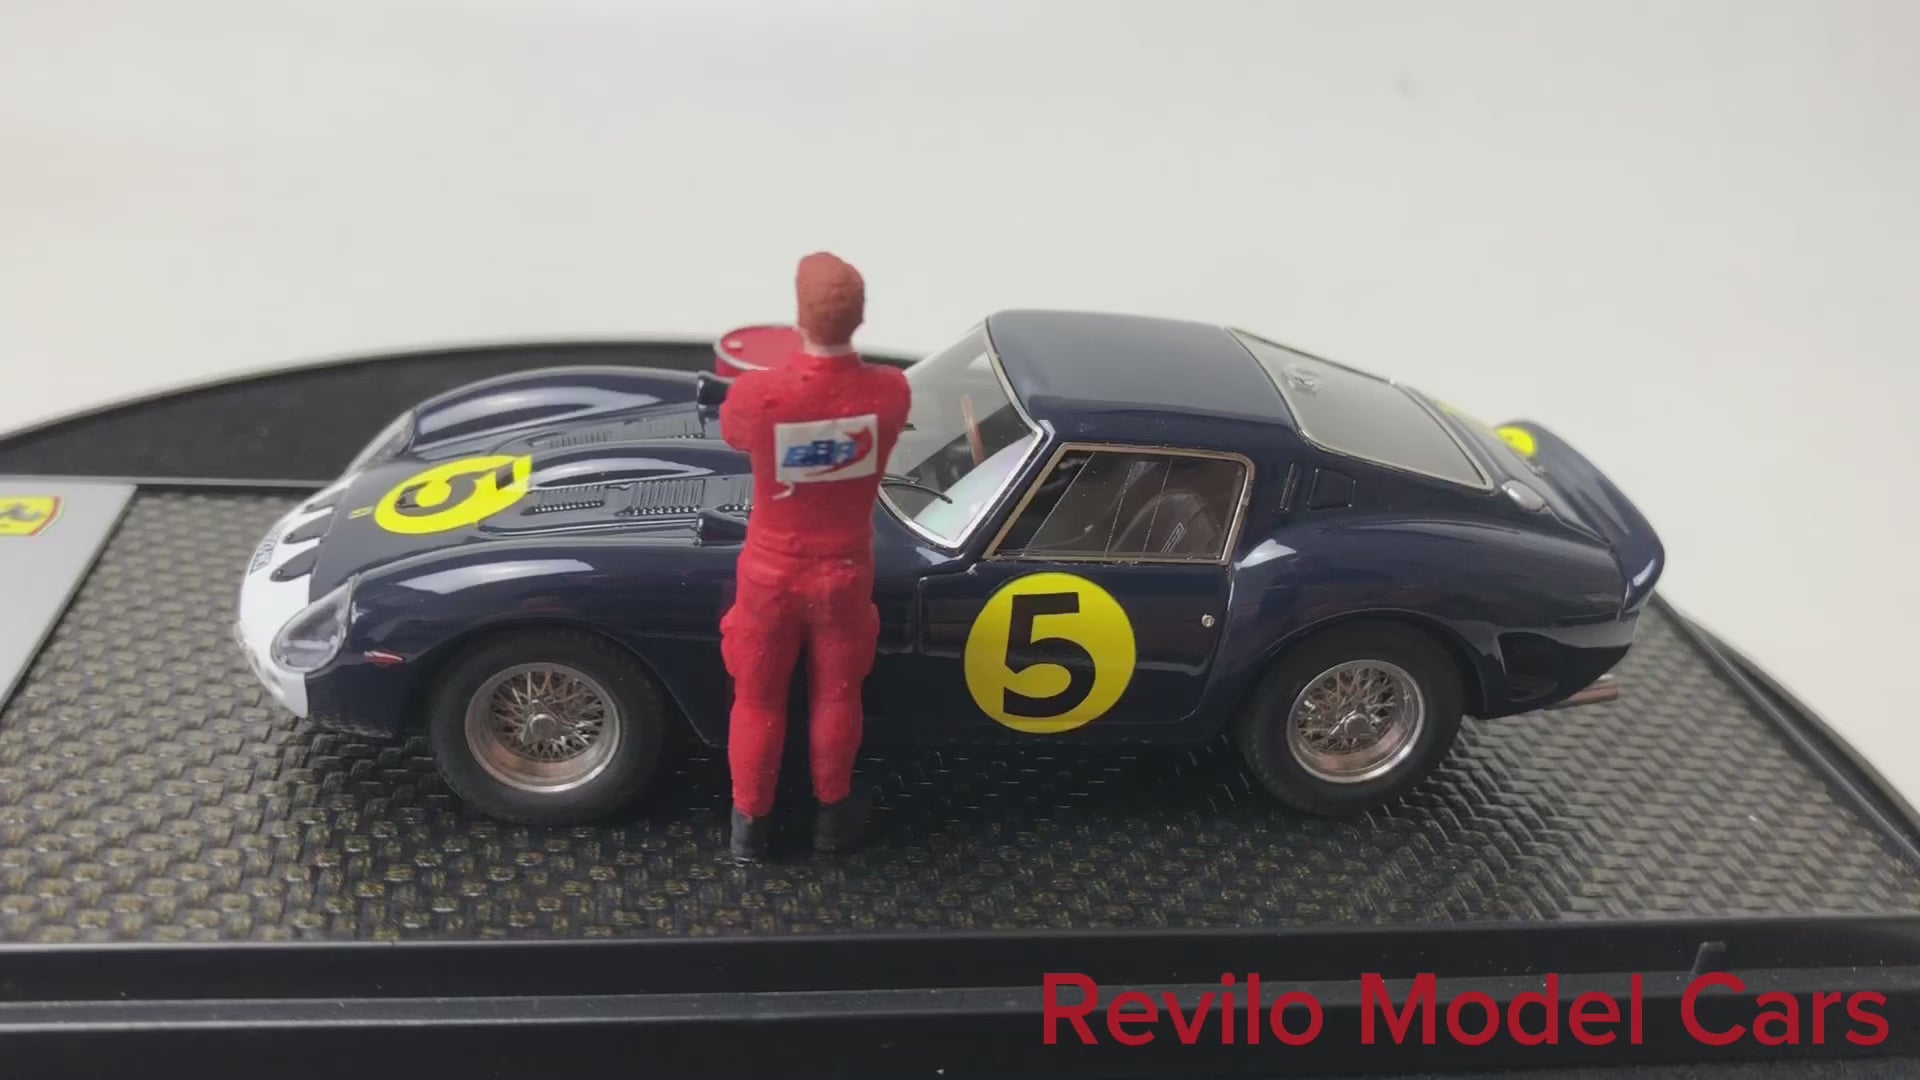 BBR 1:43 scale Ferrari 250 GTO diorama